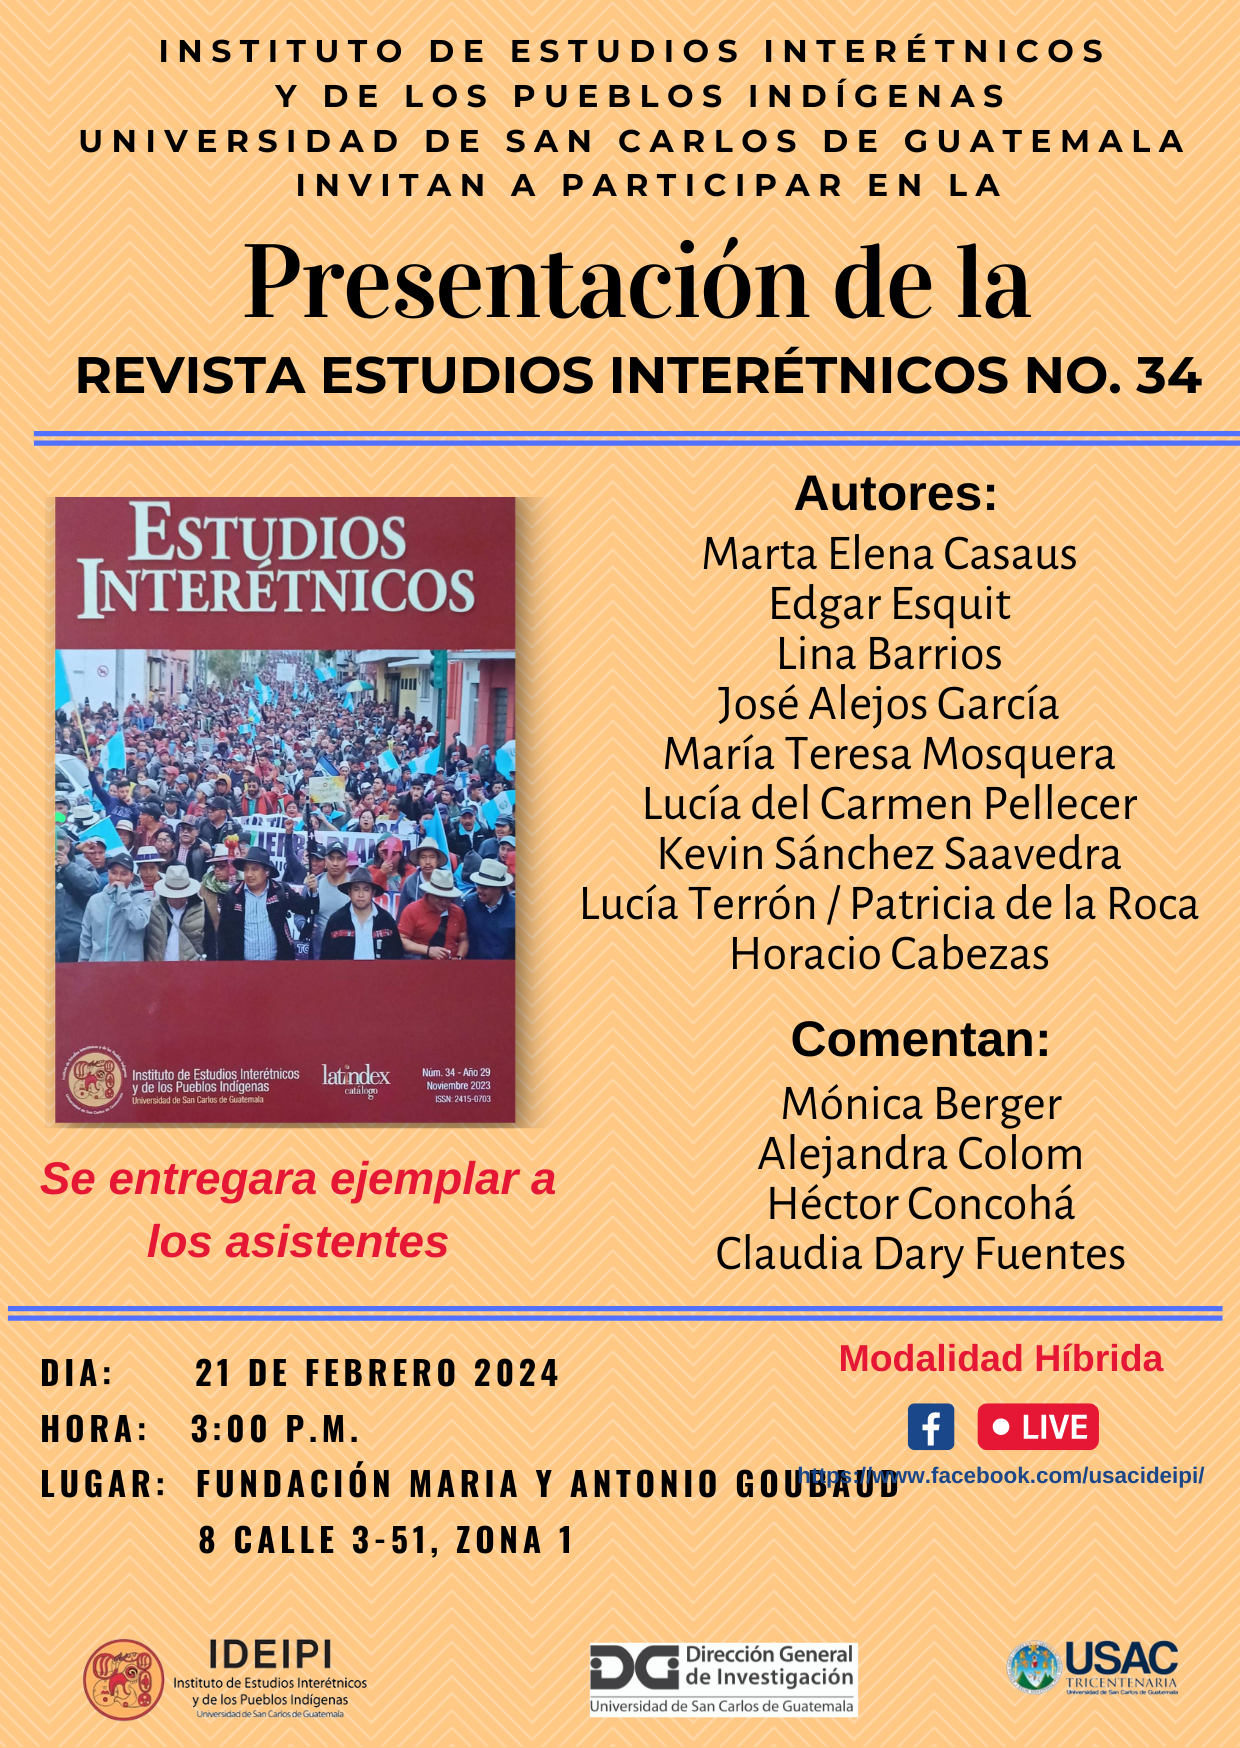 Presentación Revista Estudios Interétnicos No. 34